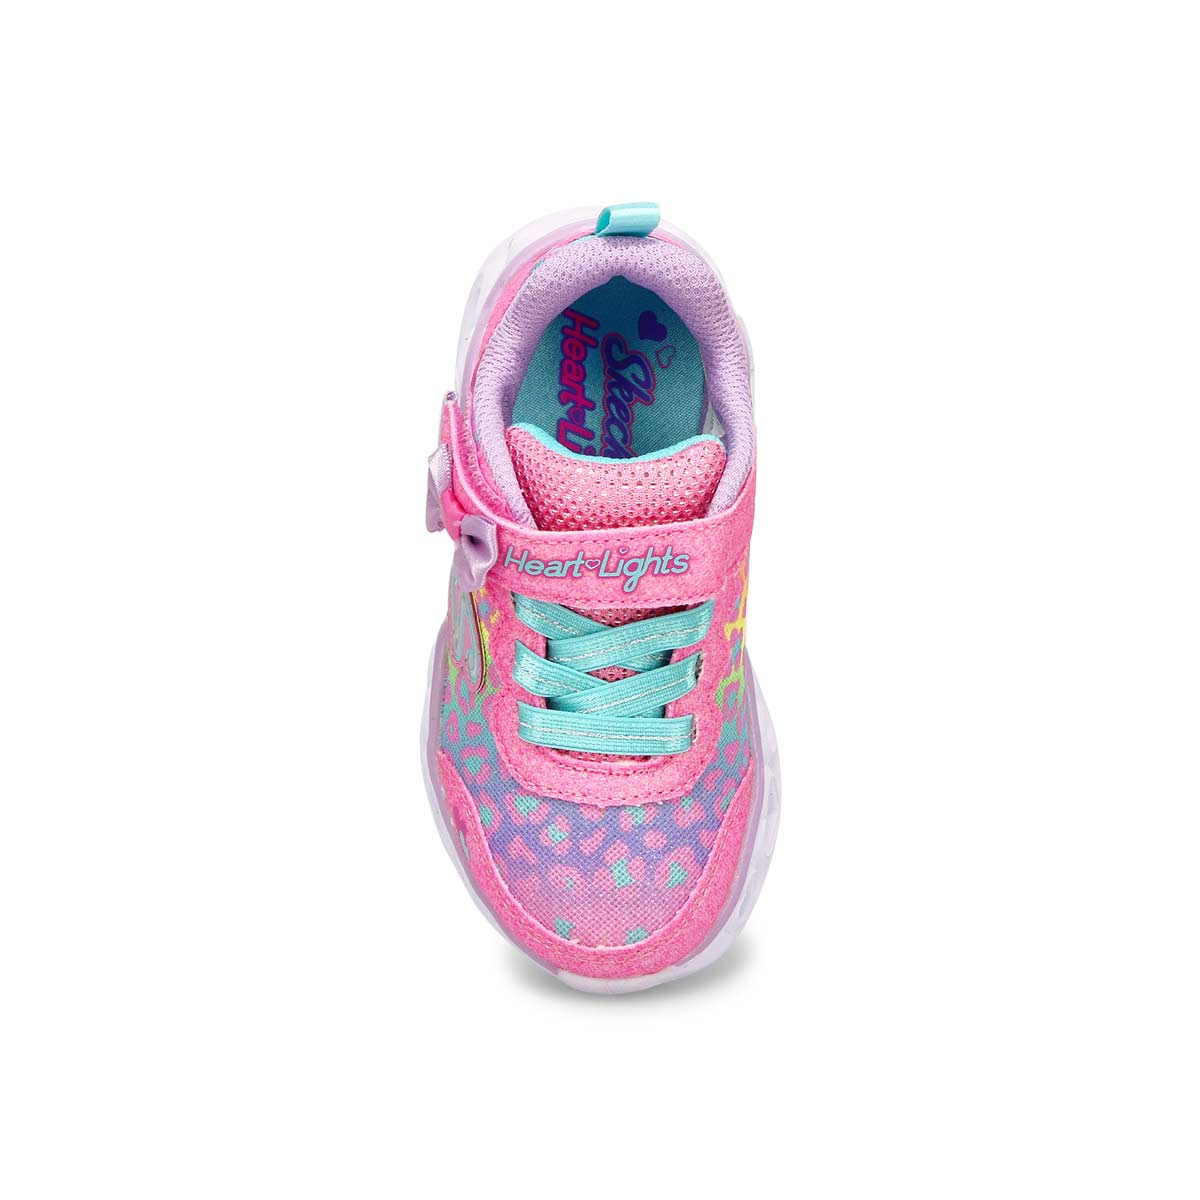 Infants' Heart Lights sneaker - Pink/Mint